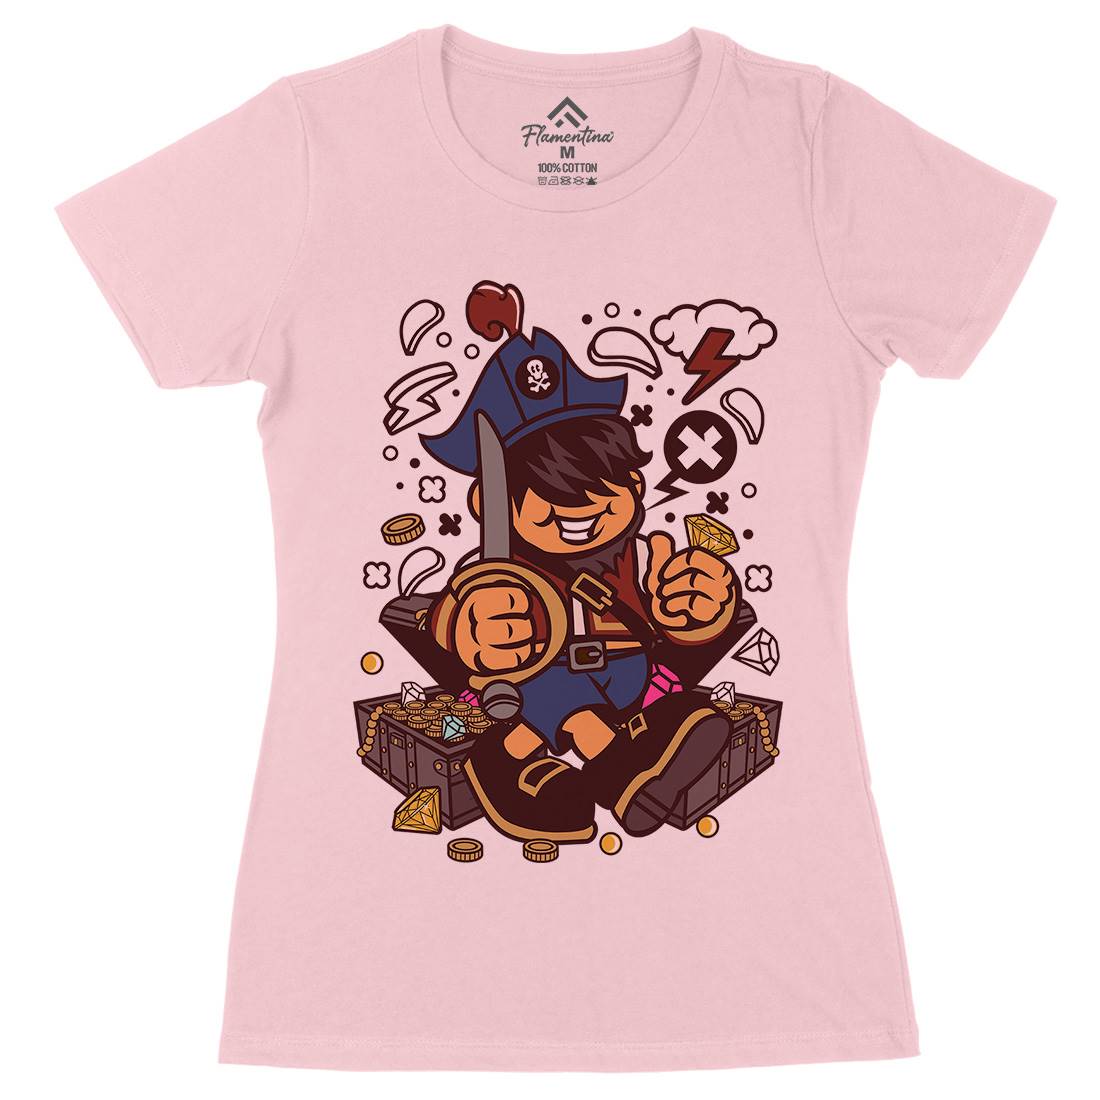 Pirate Kid Womens Organic Crew Neck T-Shirt Navy C191